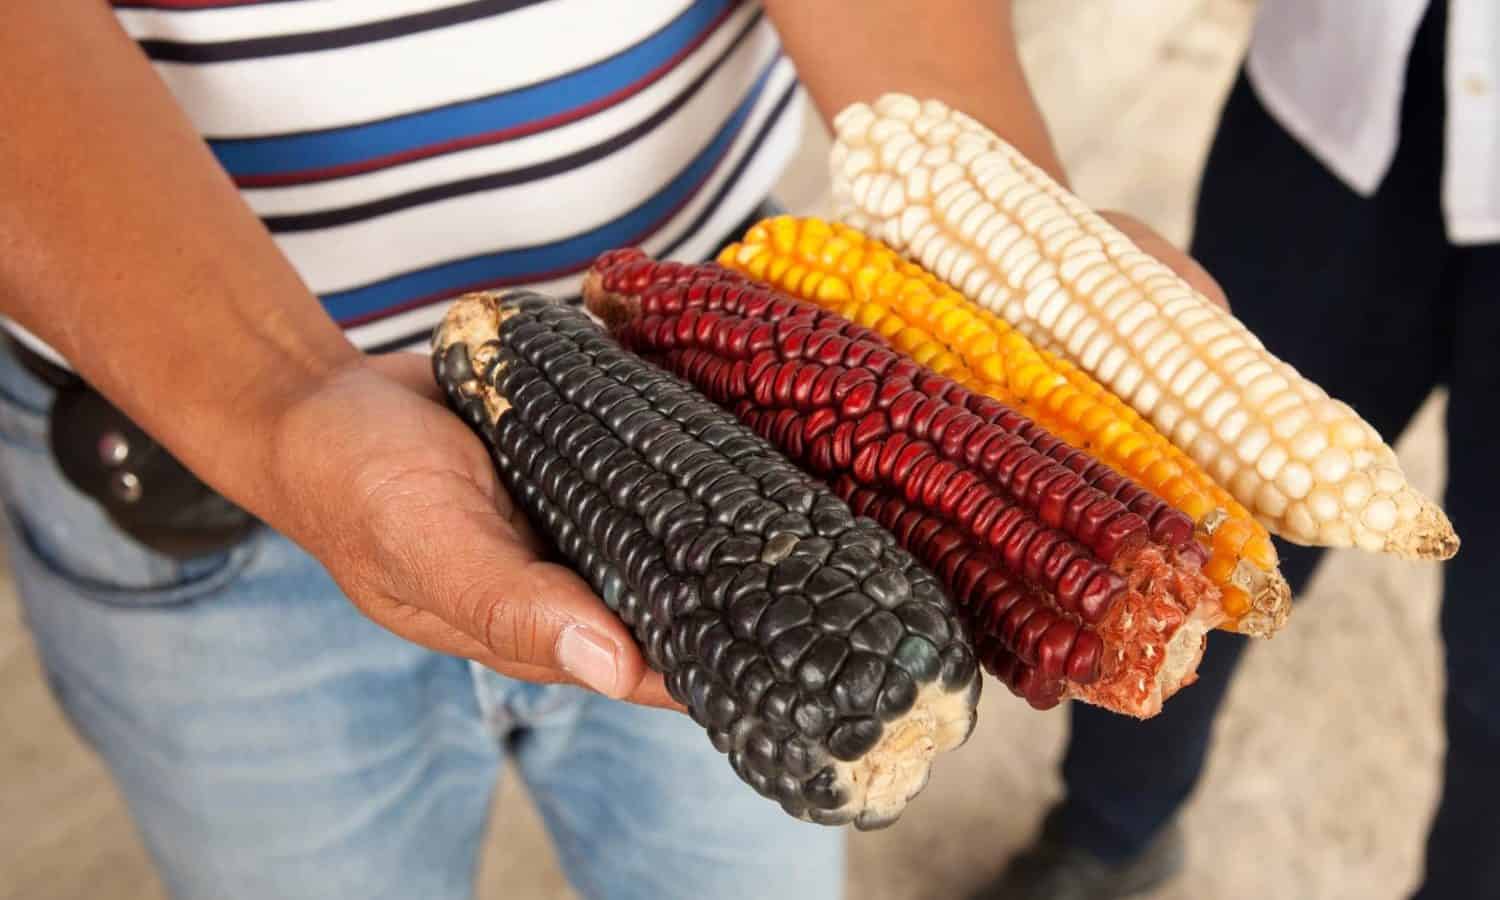 洛佩斯·奥布拉多（LópezObrador）的胜利之后，农民预计将动员墨西哥农村地区，希望为农业实践带来更多的可持续性。